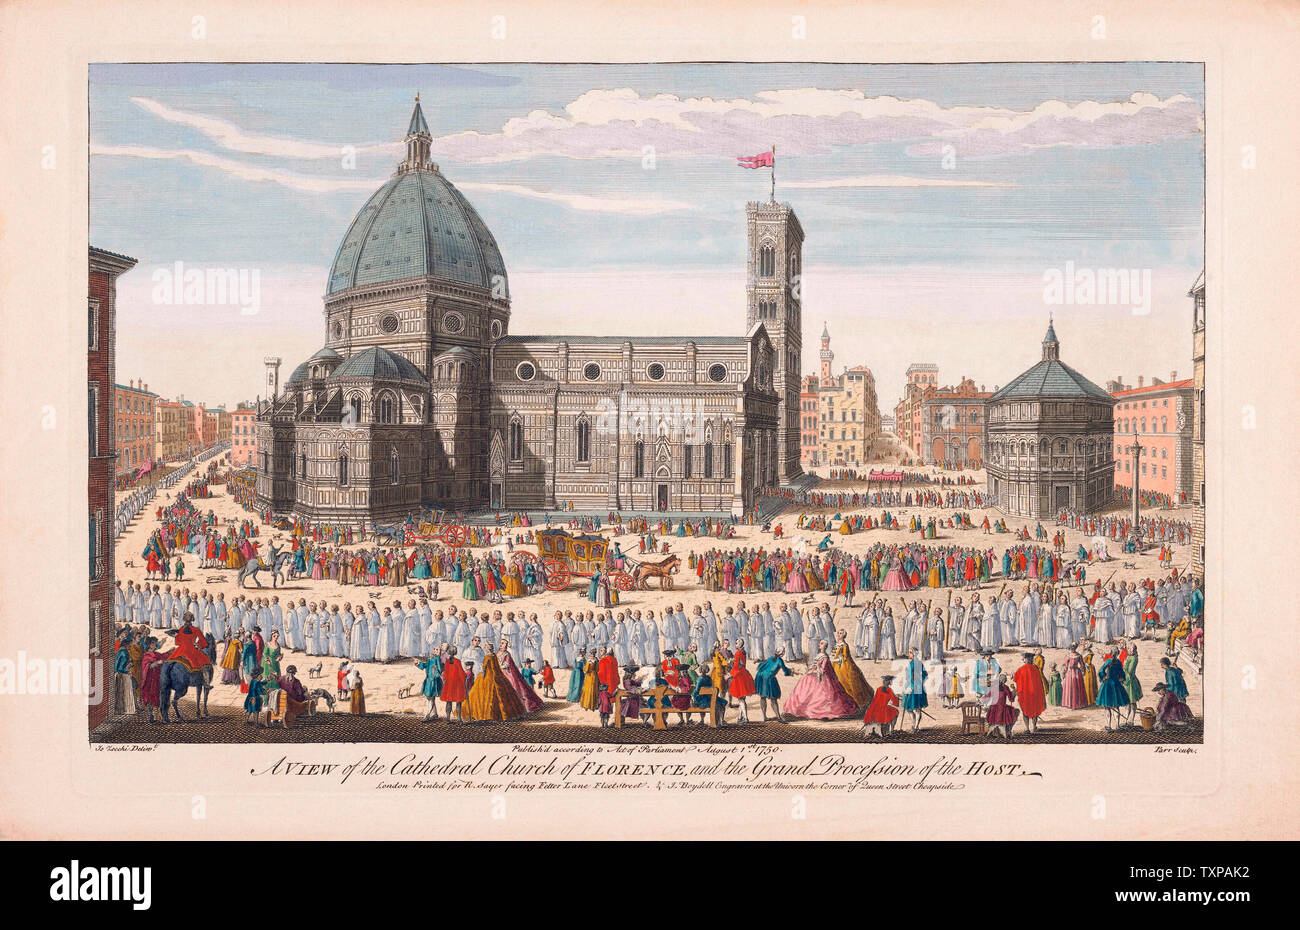 Une vue de la cathédrale de Florence et la grande procession de l'hôte. Après une gravure à la main, publié à Londres, 1750. Banque D'Images